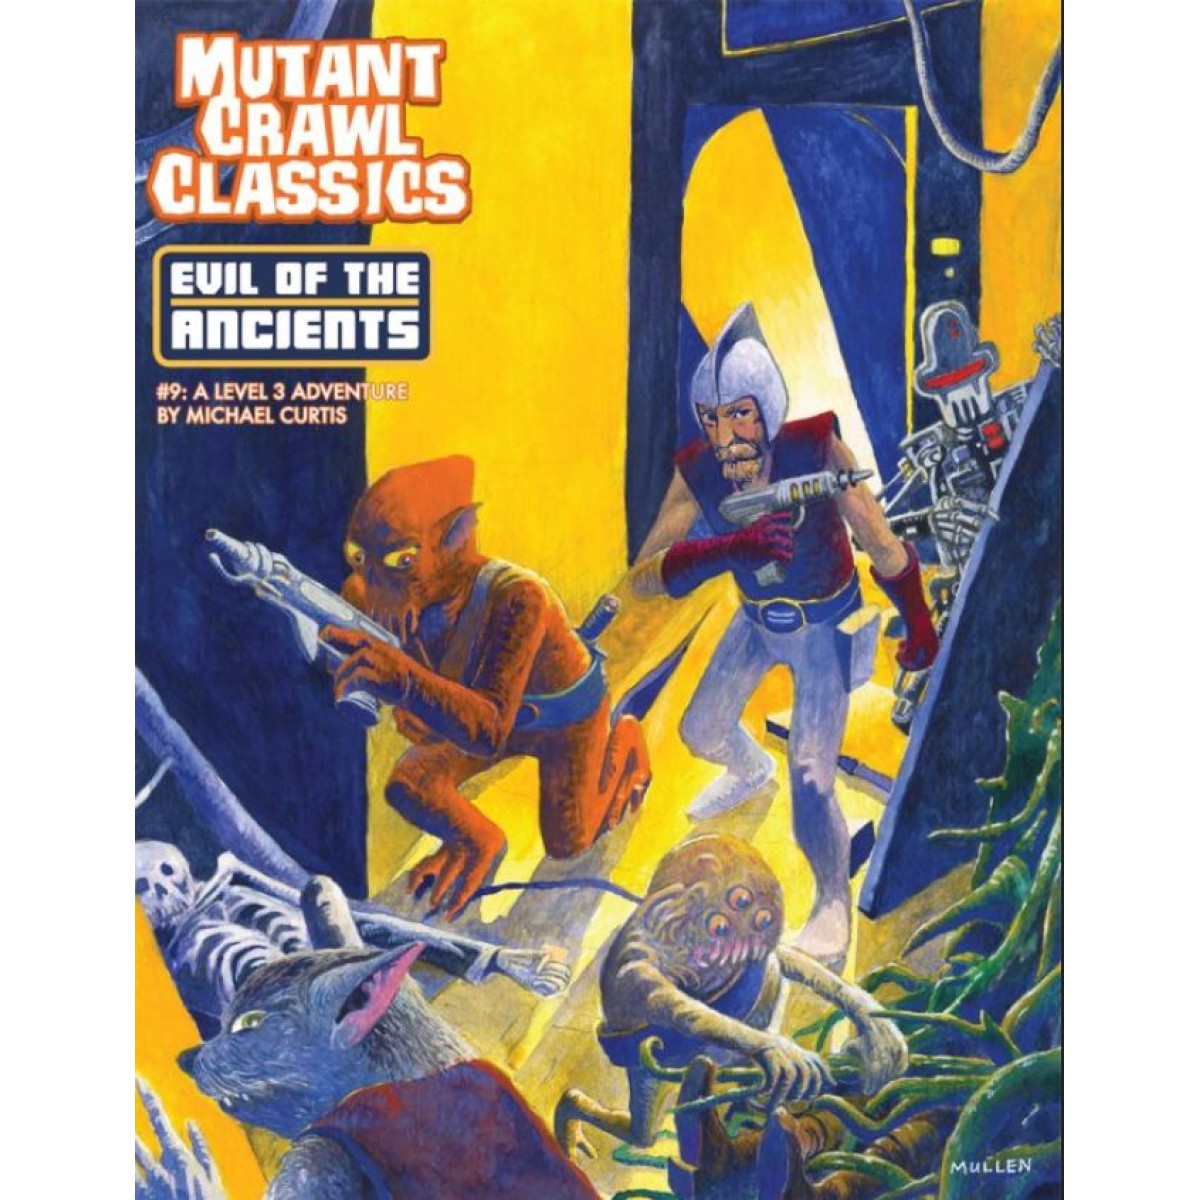 Mutant Crawl Classics 9 - Evil of the Ancients